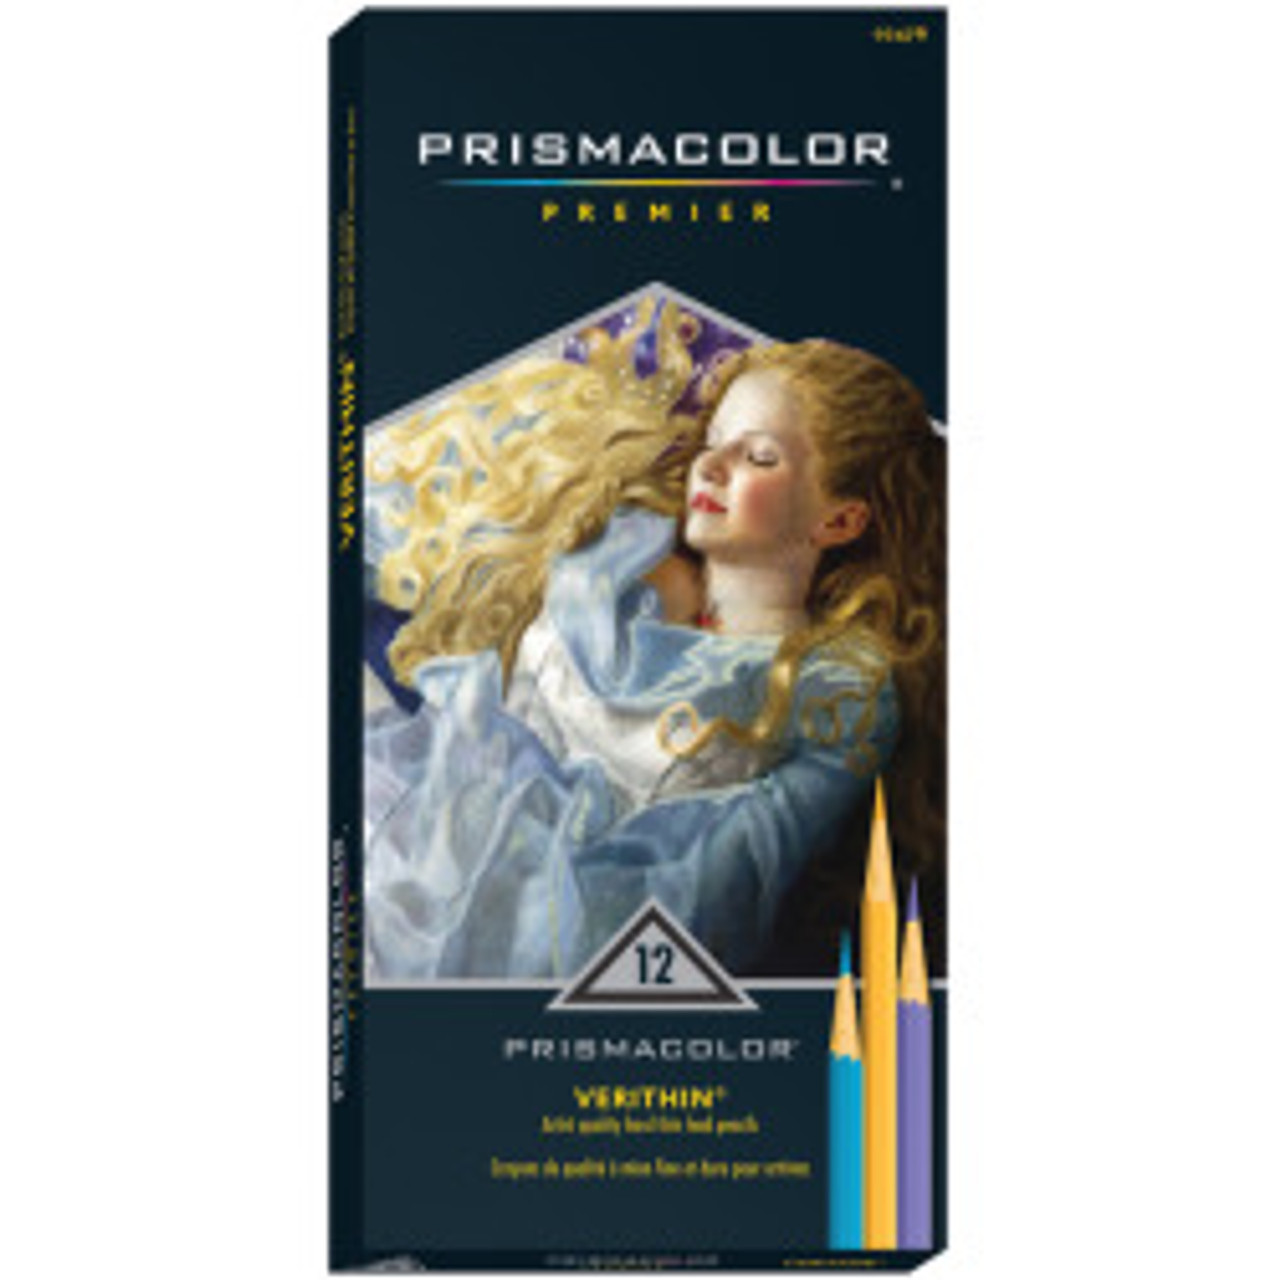 Prismacolor Pencil 24pc Set - Meininger Art Supply